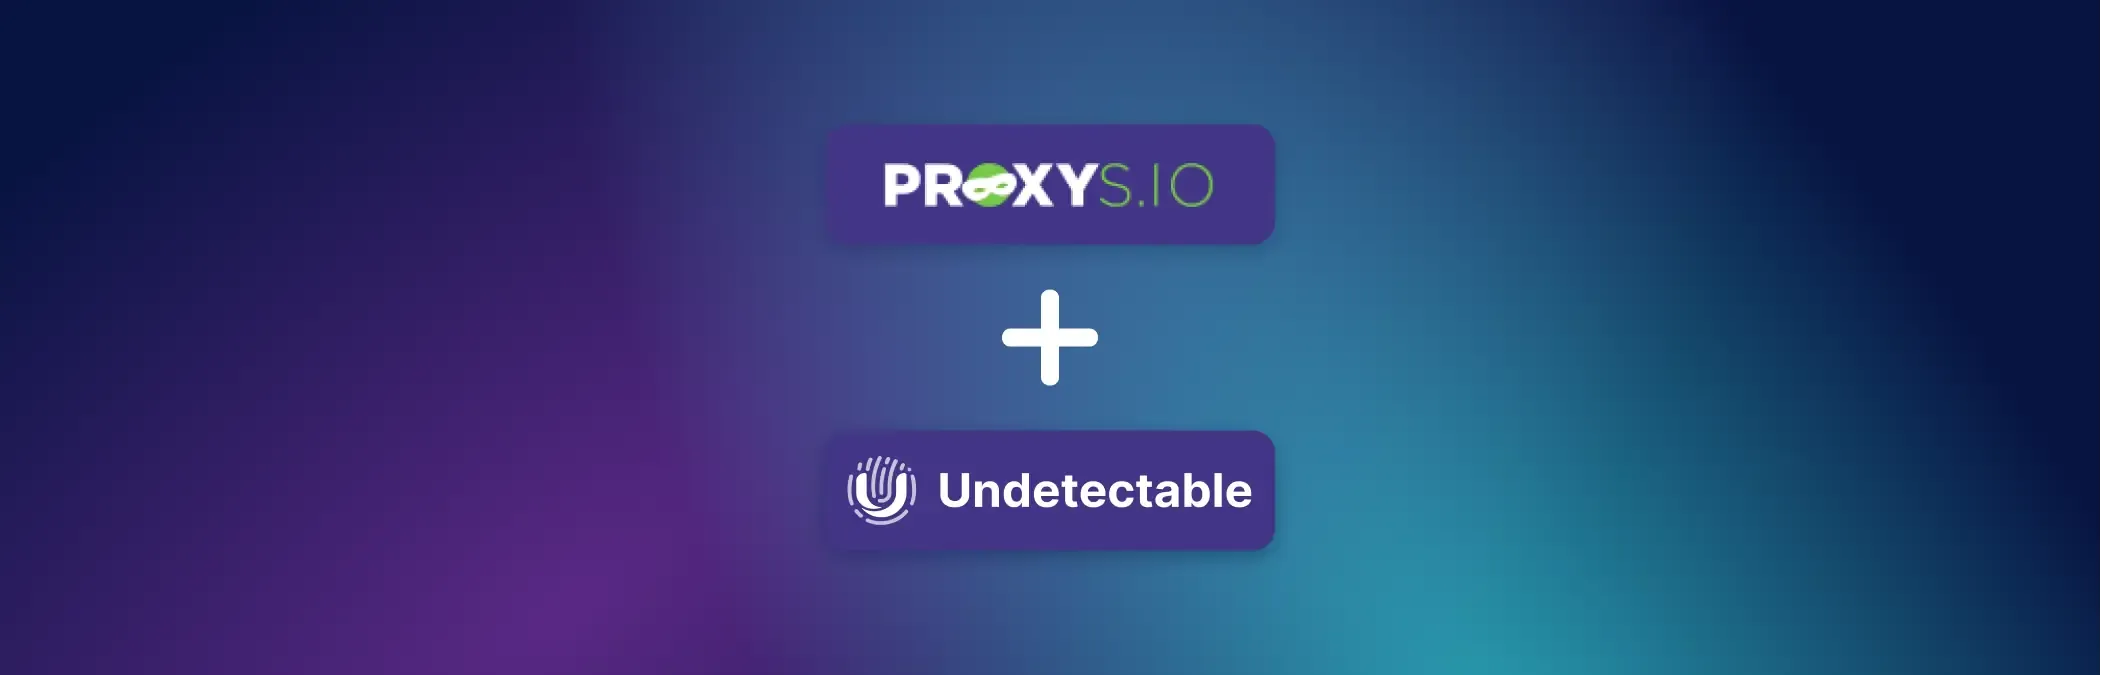 Anleitung zum Verwenden des Proxys.io-Dienstes im Undetectable-Browser